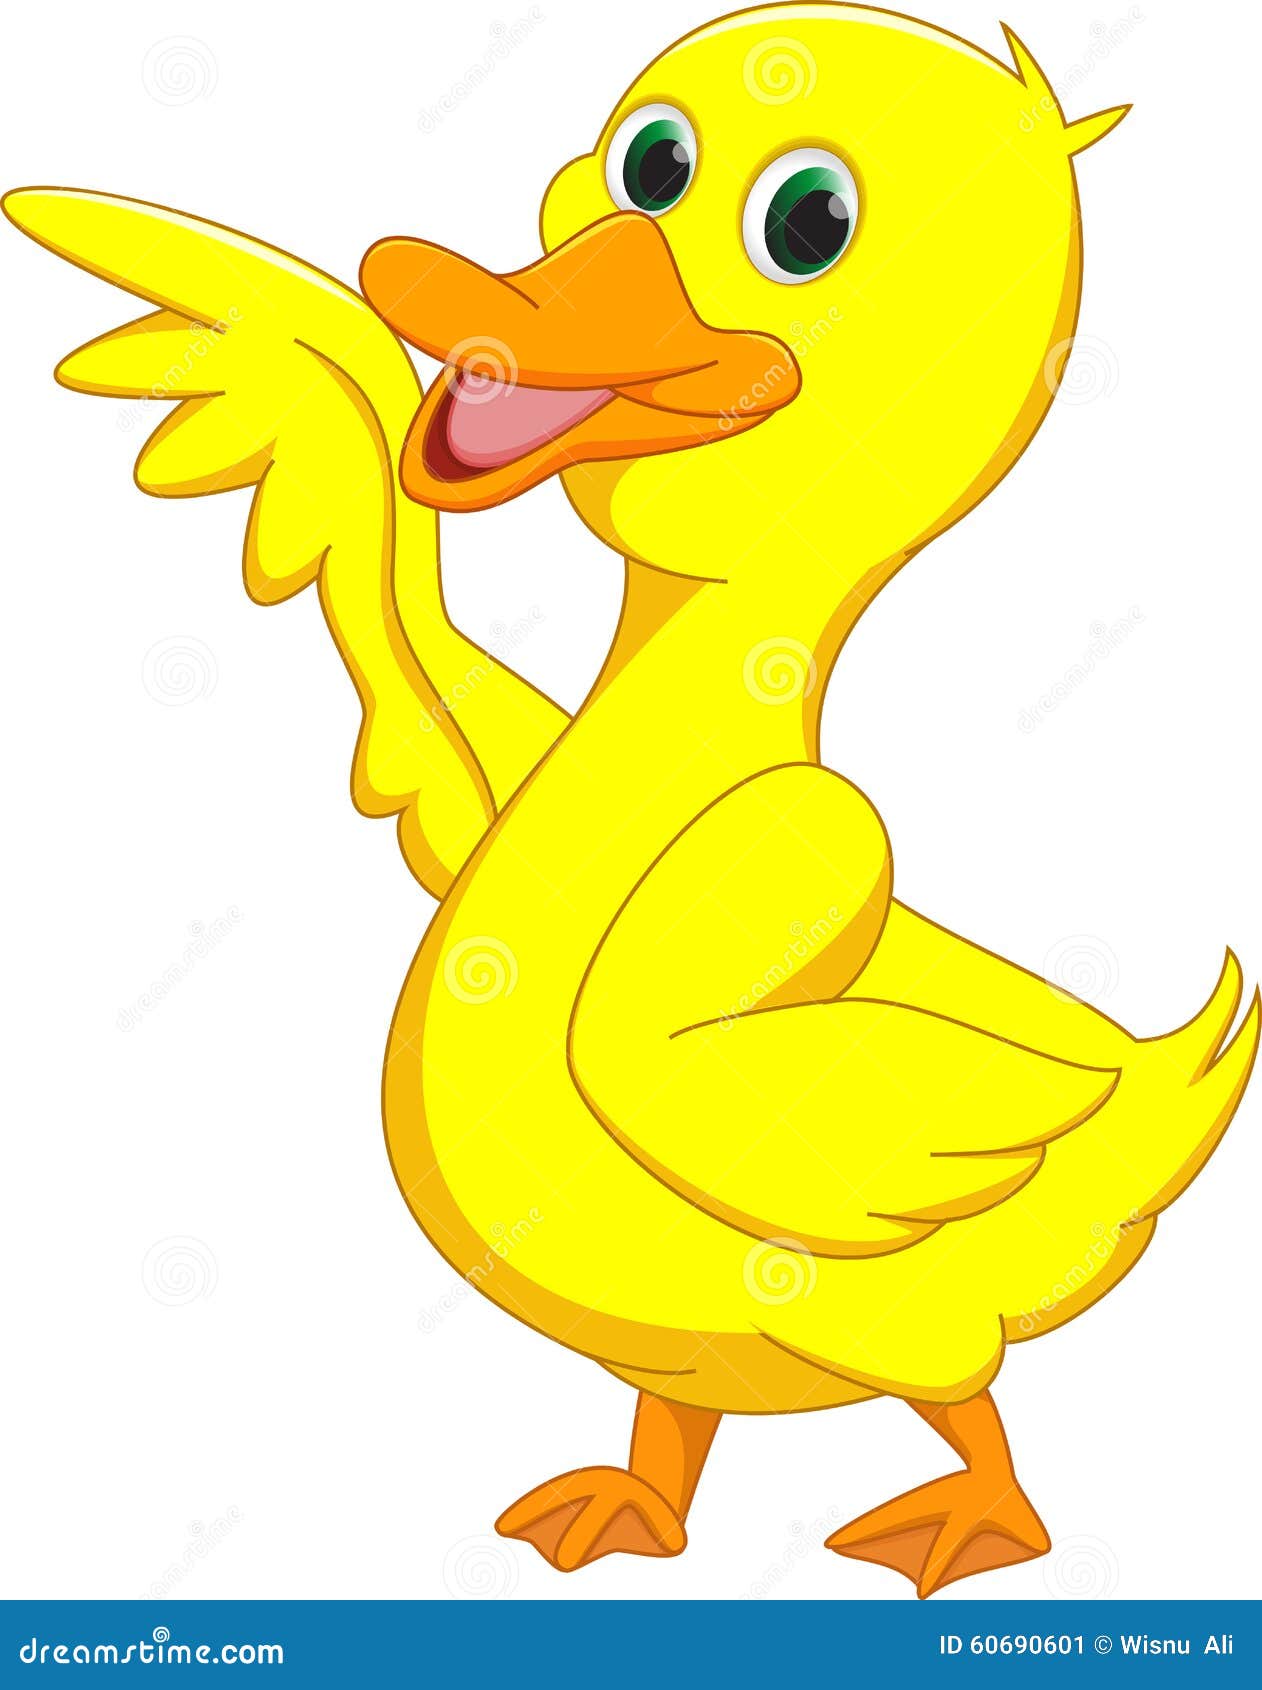 Cute Duck Cartoon Waving Stock Vector - Image: 60690601